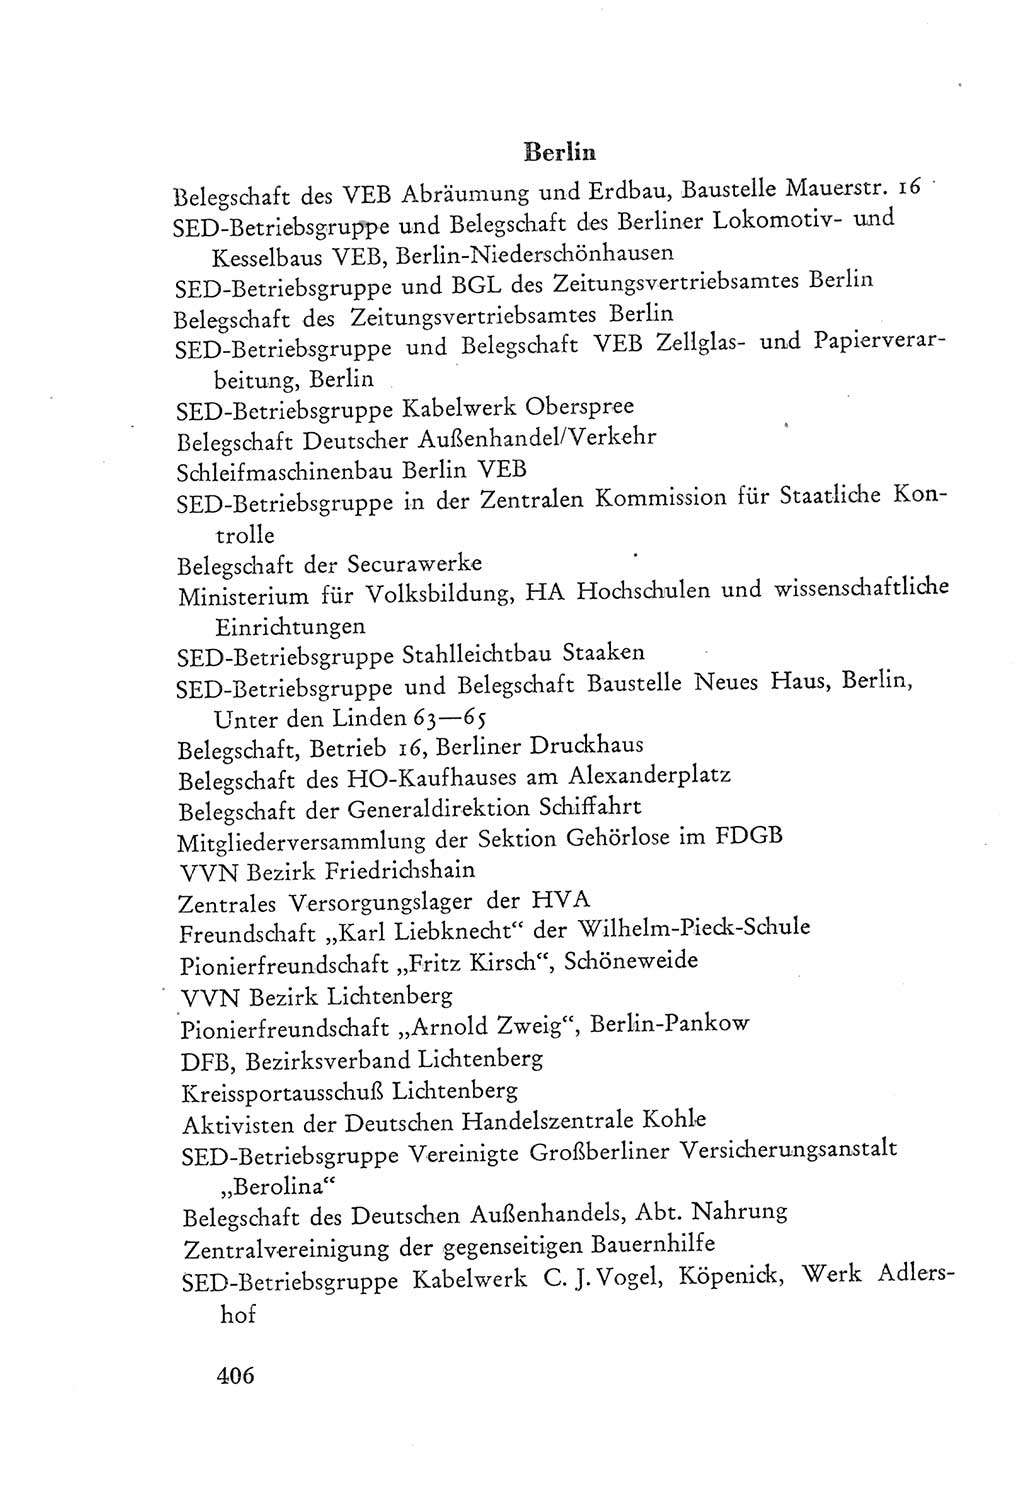 Protokoll der Verhandlungen des Ⅲ. Parteitages der Sozialistischen Einheitspartei Deutschlands (SED) [Deutsche Demokratische Republik (DDR)] 1950, Band 2, Seite 406 (Prot. Verh. Ⅲ. PT SED DDR 1950, Bd. 2, S. 406)